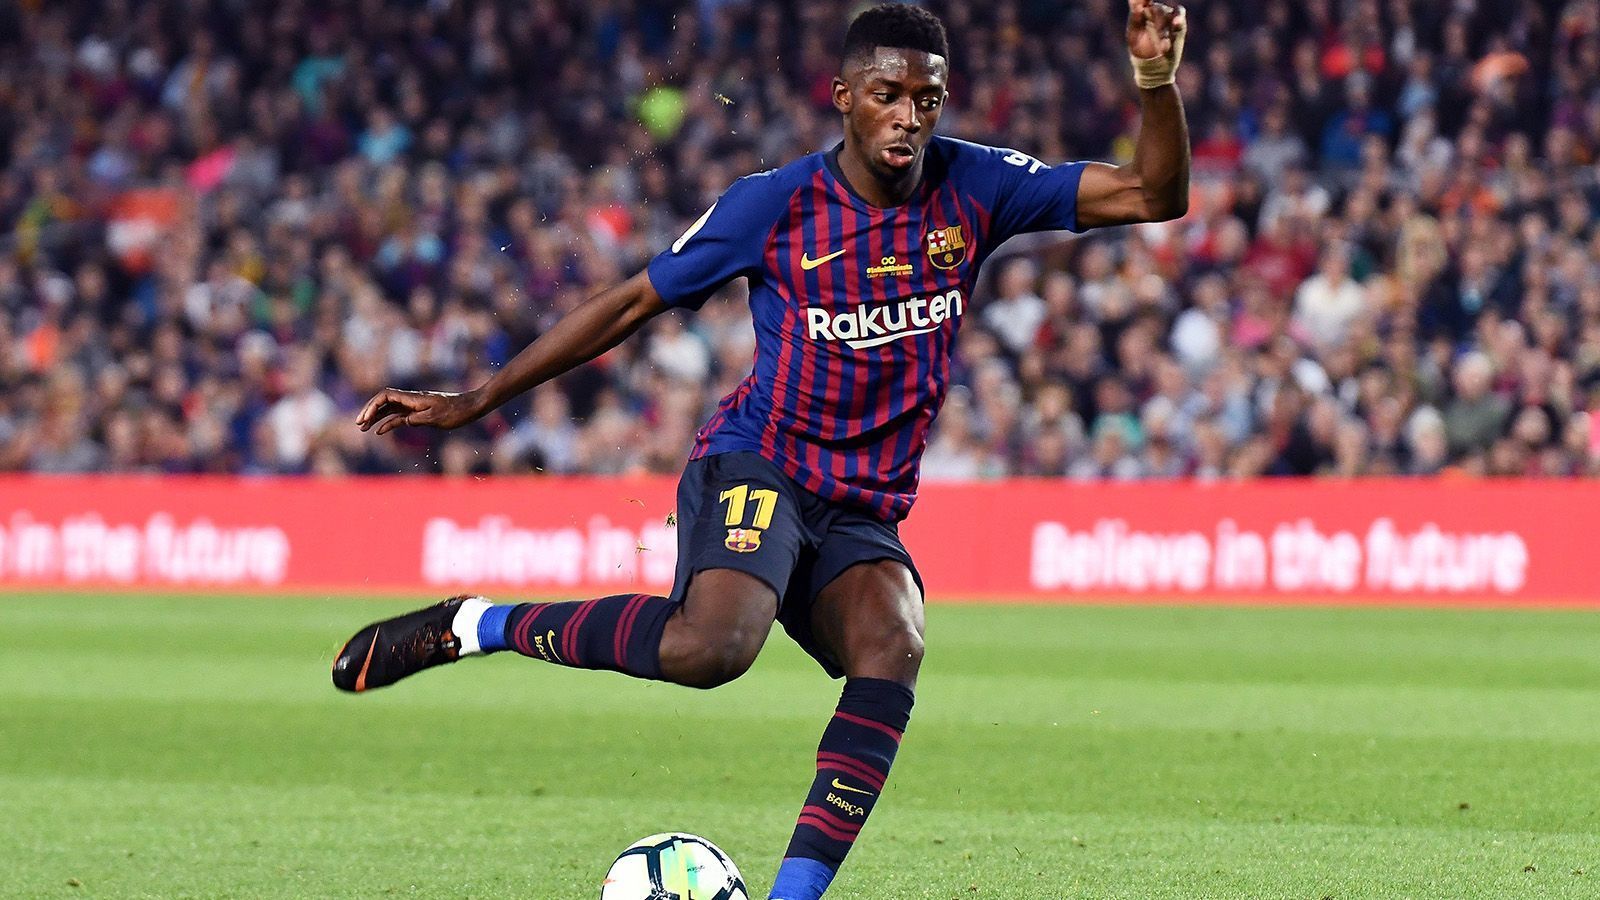 
                <strong>Platz 5: Ousmane Dembele</strong><br>
                Ousmane Dembele hatte keine Lust mehr auf Borussia Dortmund und erstreikte sich im Sommer 2017 den Transfer zum FC Barcelona nach nur einer Saison beim BVB. Barca zahlte immerhin stolze 125 Millionen Euro. 
              